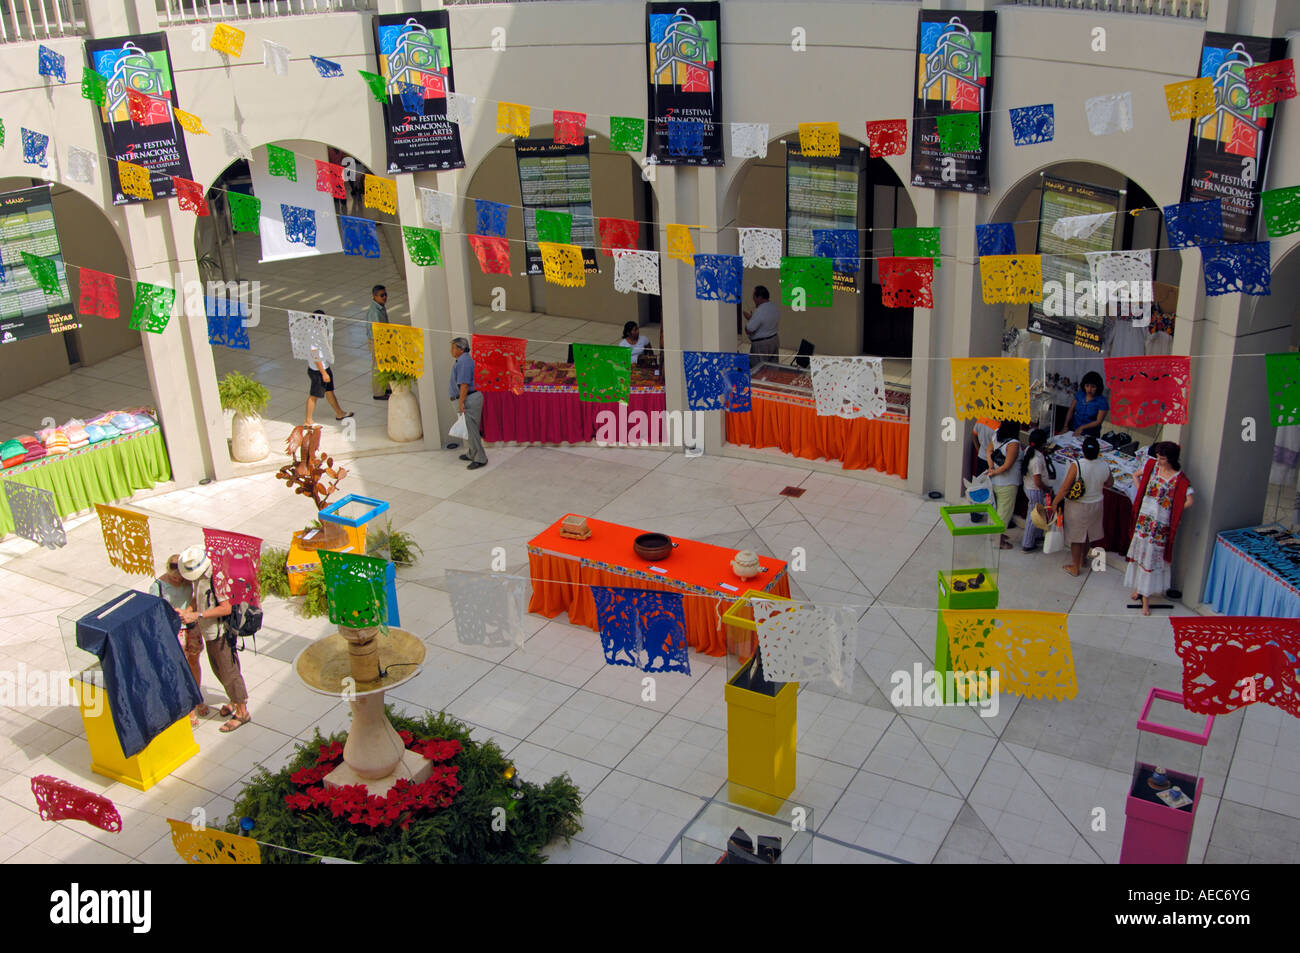 The 3rd Festival Internacional de las Artes celebrating Merida as cultural capital of the Yucatan, Mexico Stock Photo